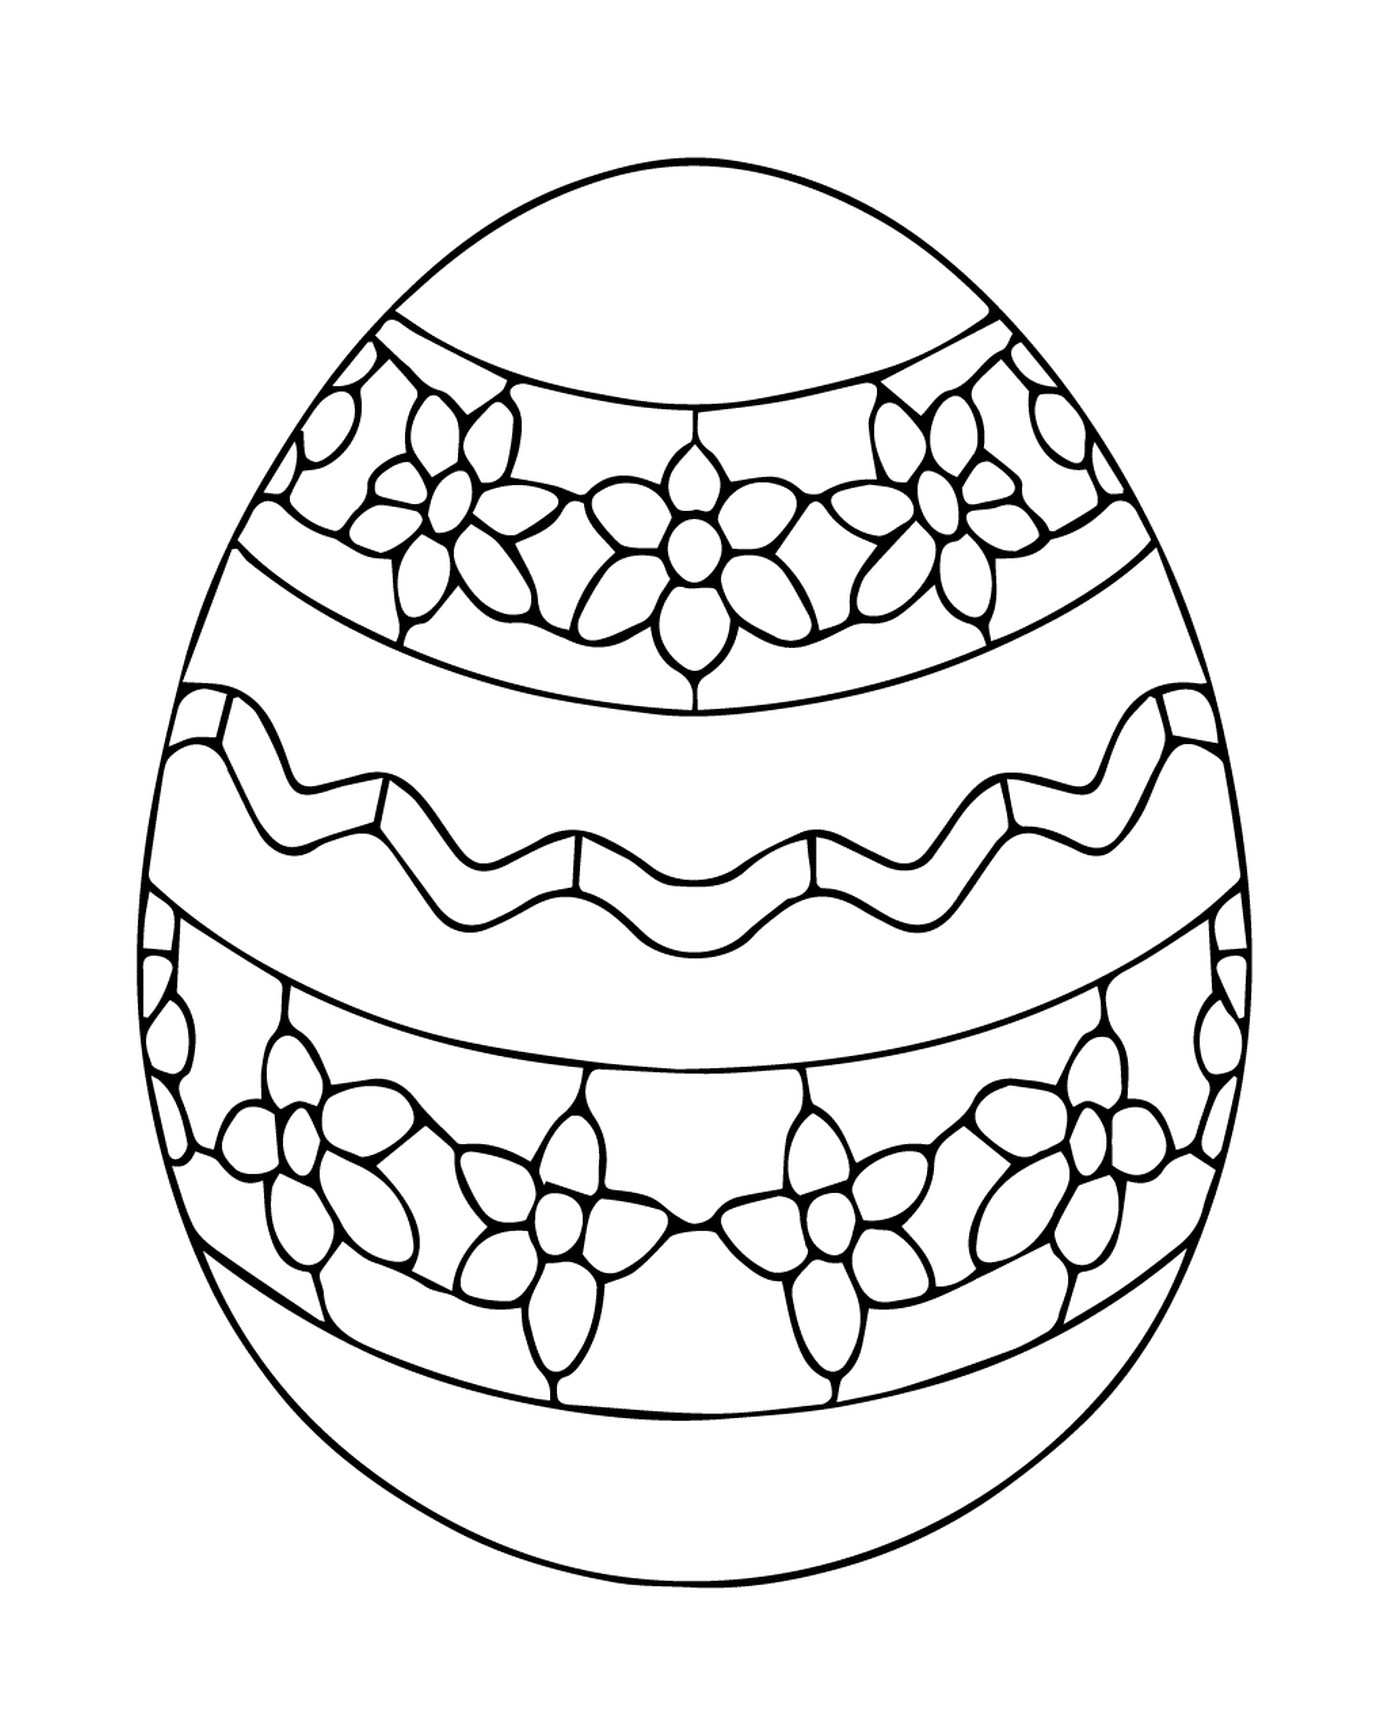  Huevo de Pascua ucraniano con patrón floral 